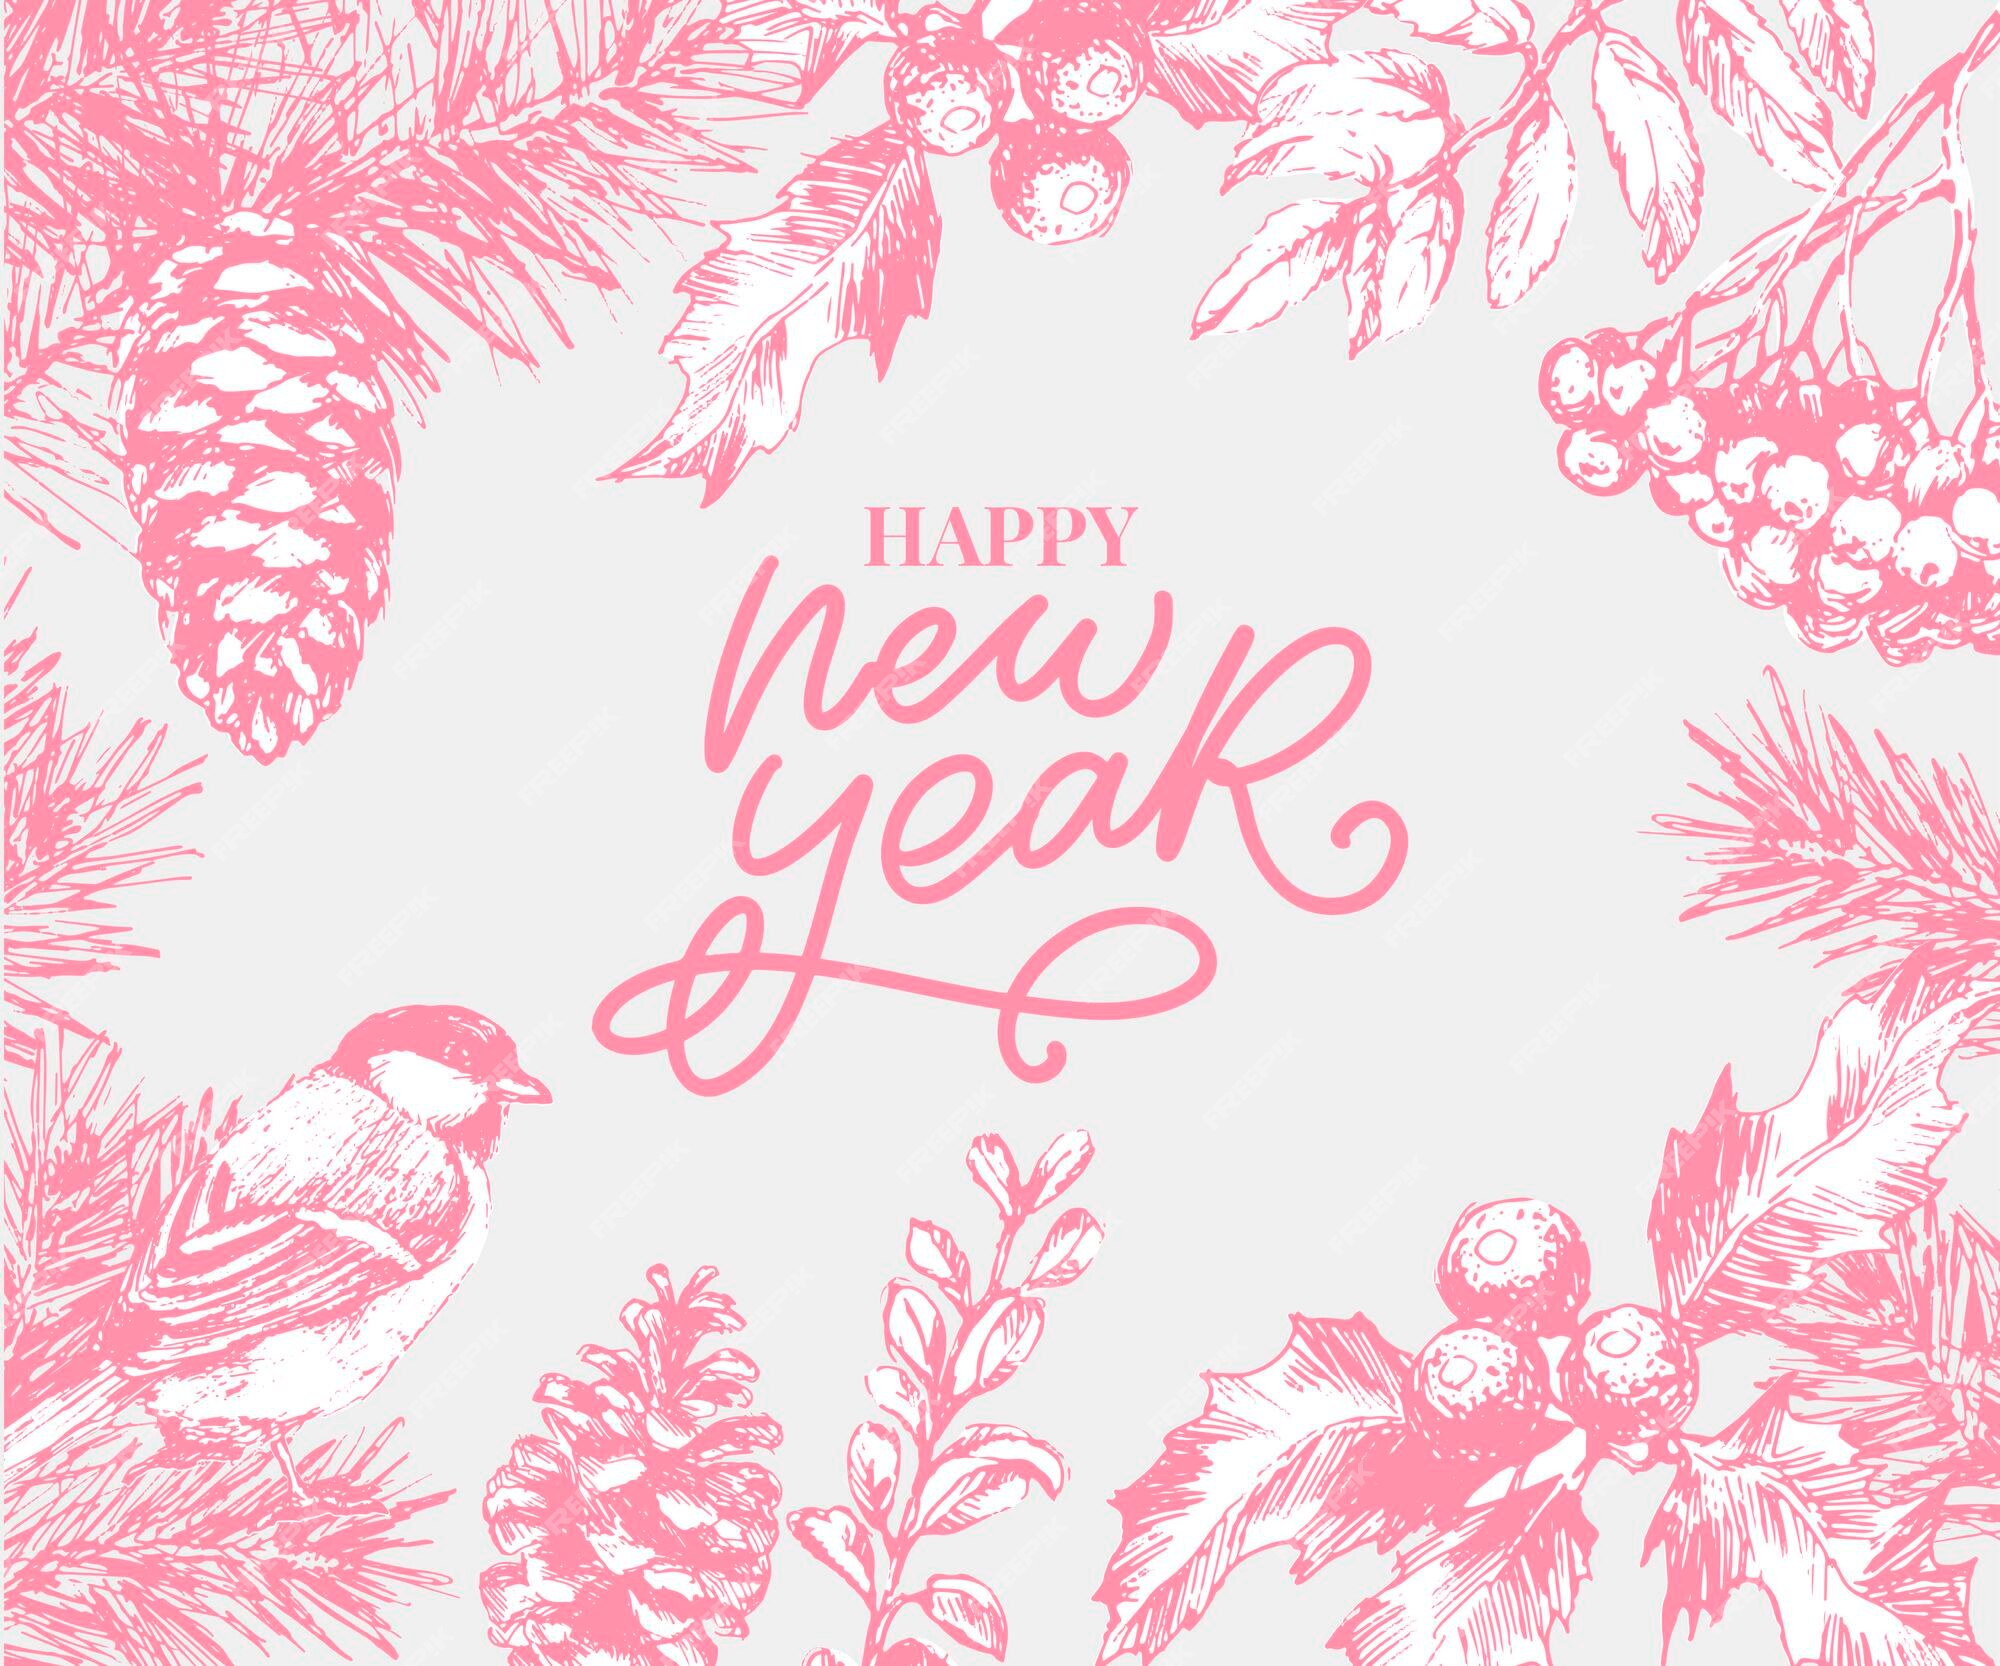 Hãy tạo ấn tượng với những người mà bạn quan tâm bằng một thiết kế thẻ chúc mừng năm mới độc đáo và tuyệt đẹp. Với họa tiết thực vật trừu tượng, các màu sắc rực rỡ, giúp bạn gửi tới những lời chúc tốt đẹp cho năm mới đầy may mắn và hạnh phúc.